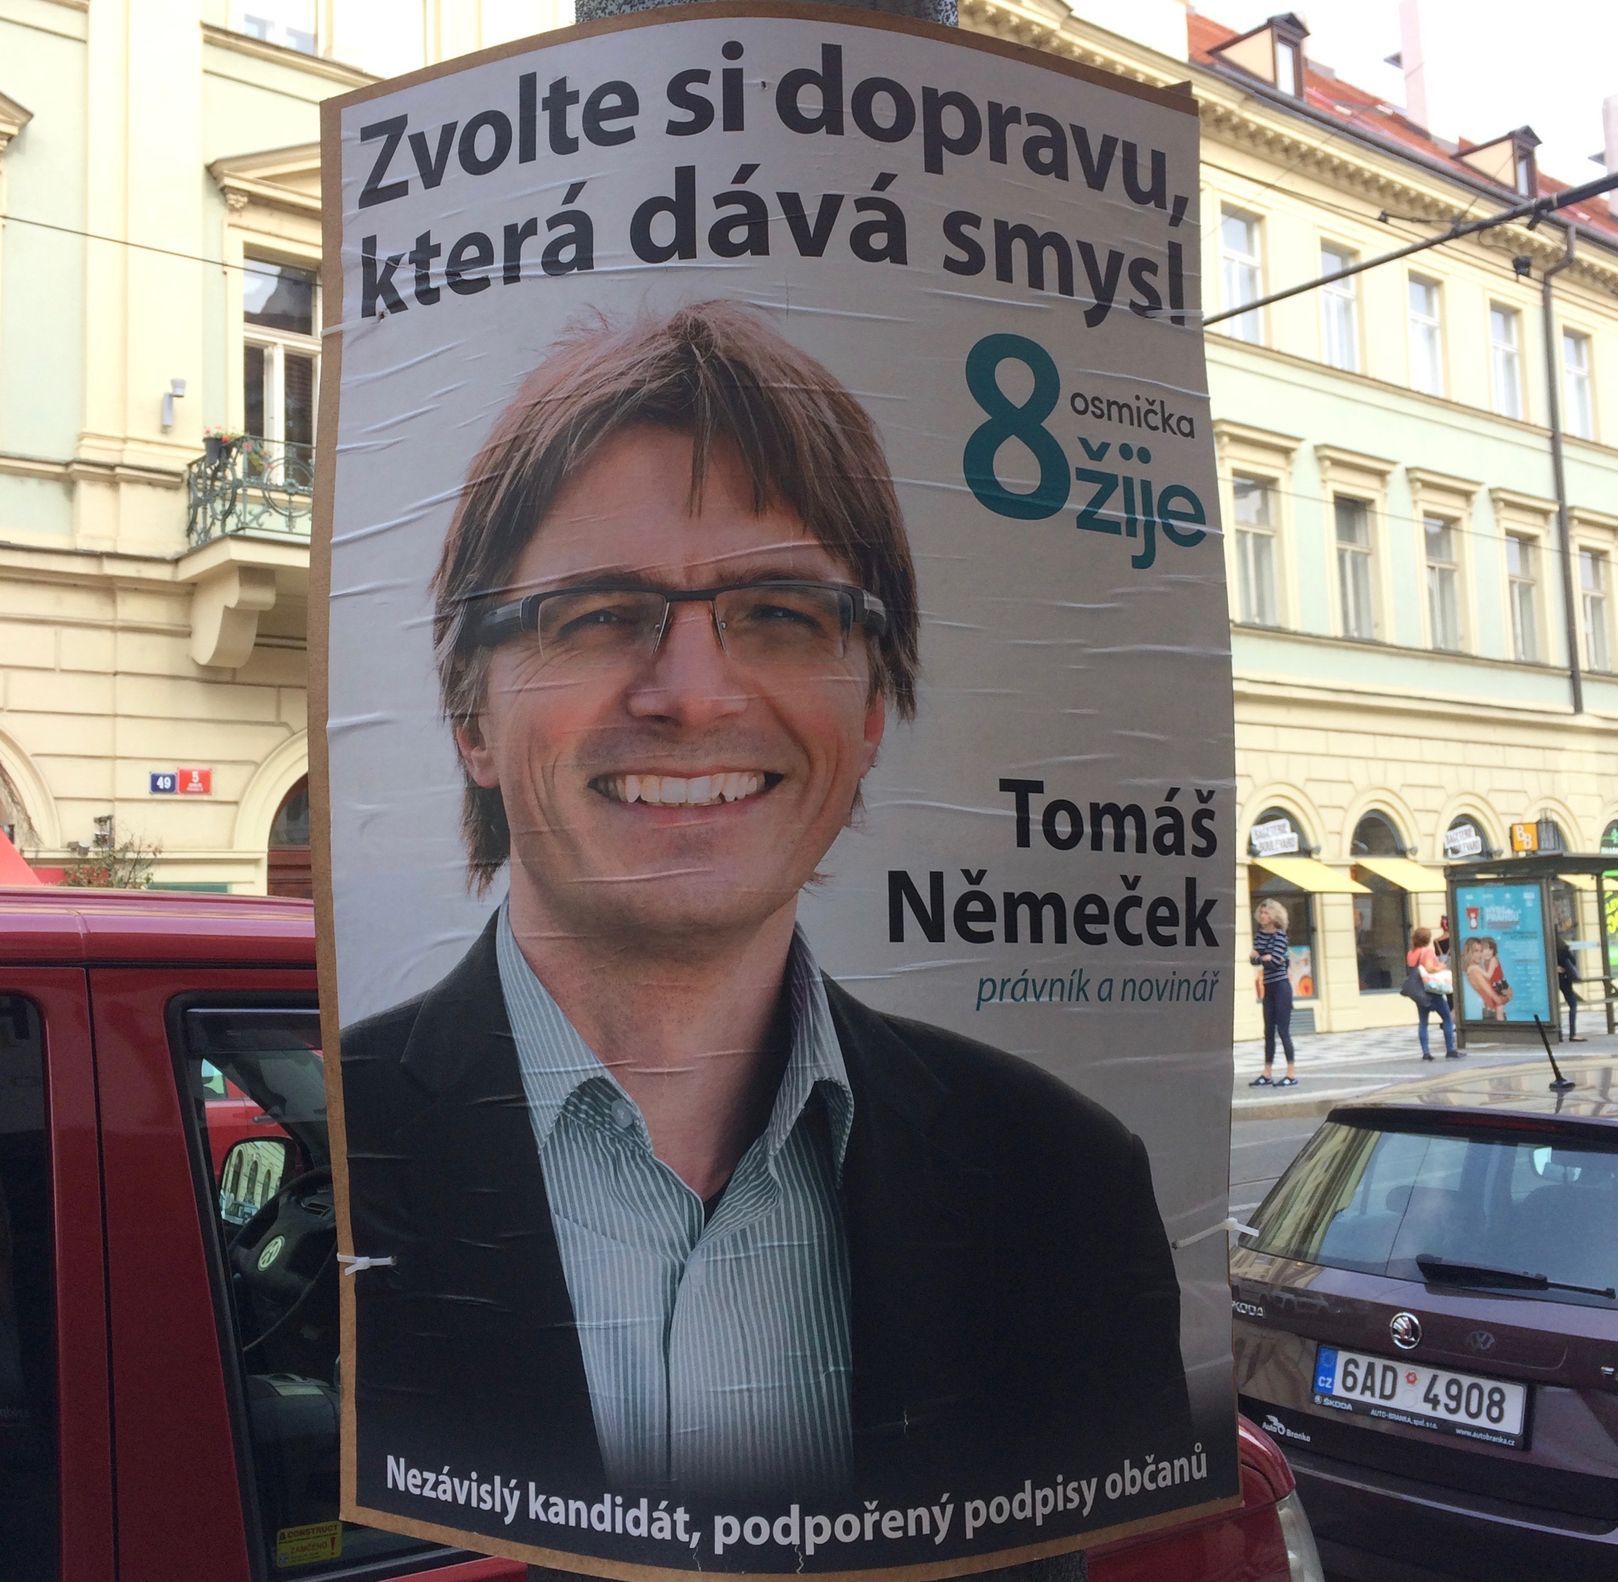 Tomáš Němeček - Zvolte si dopravu, která dává smysl!